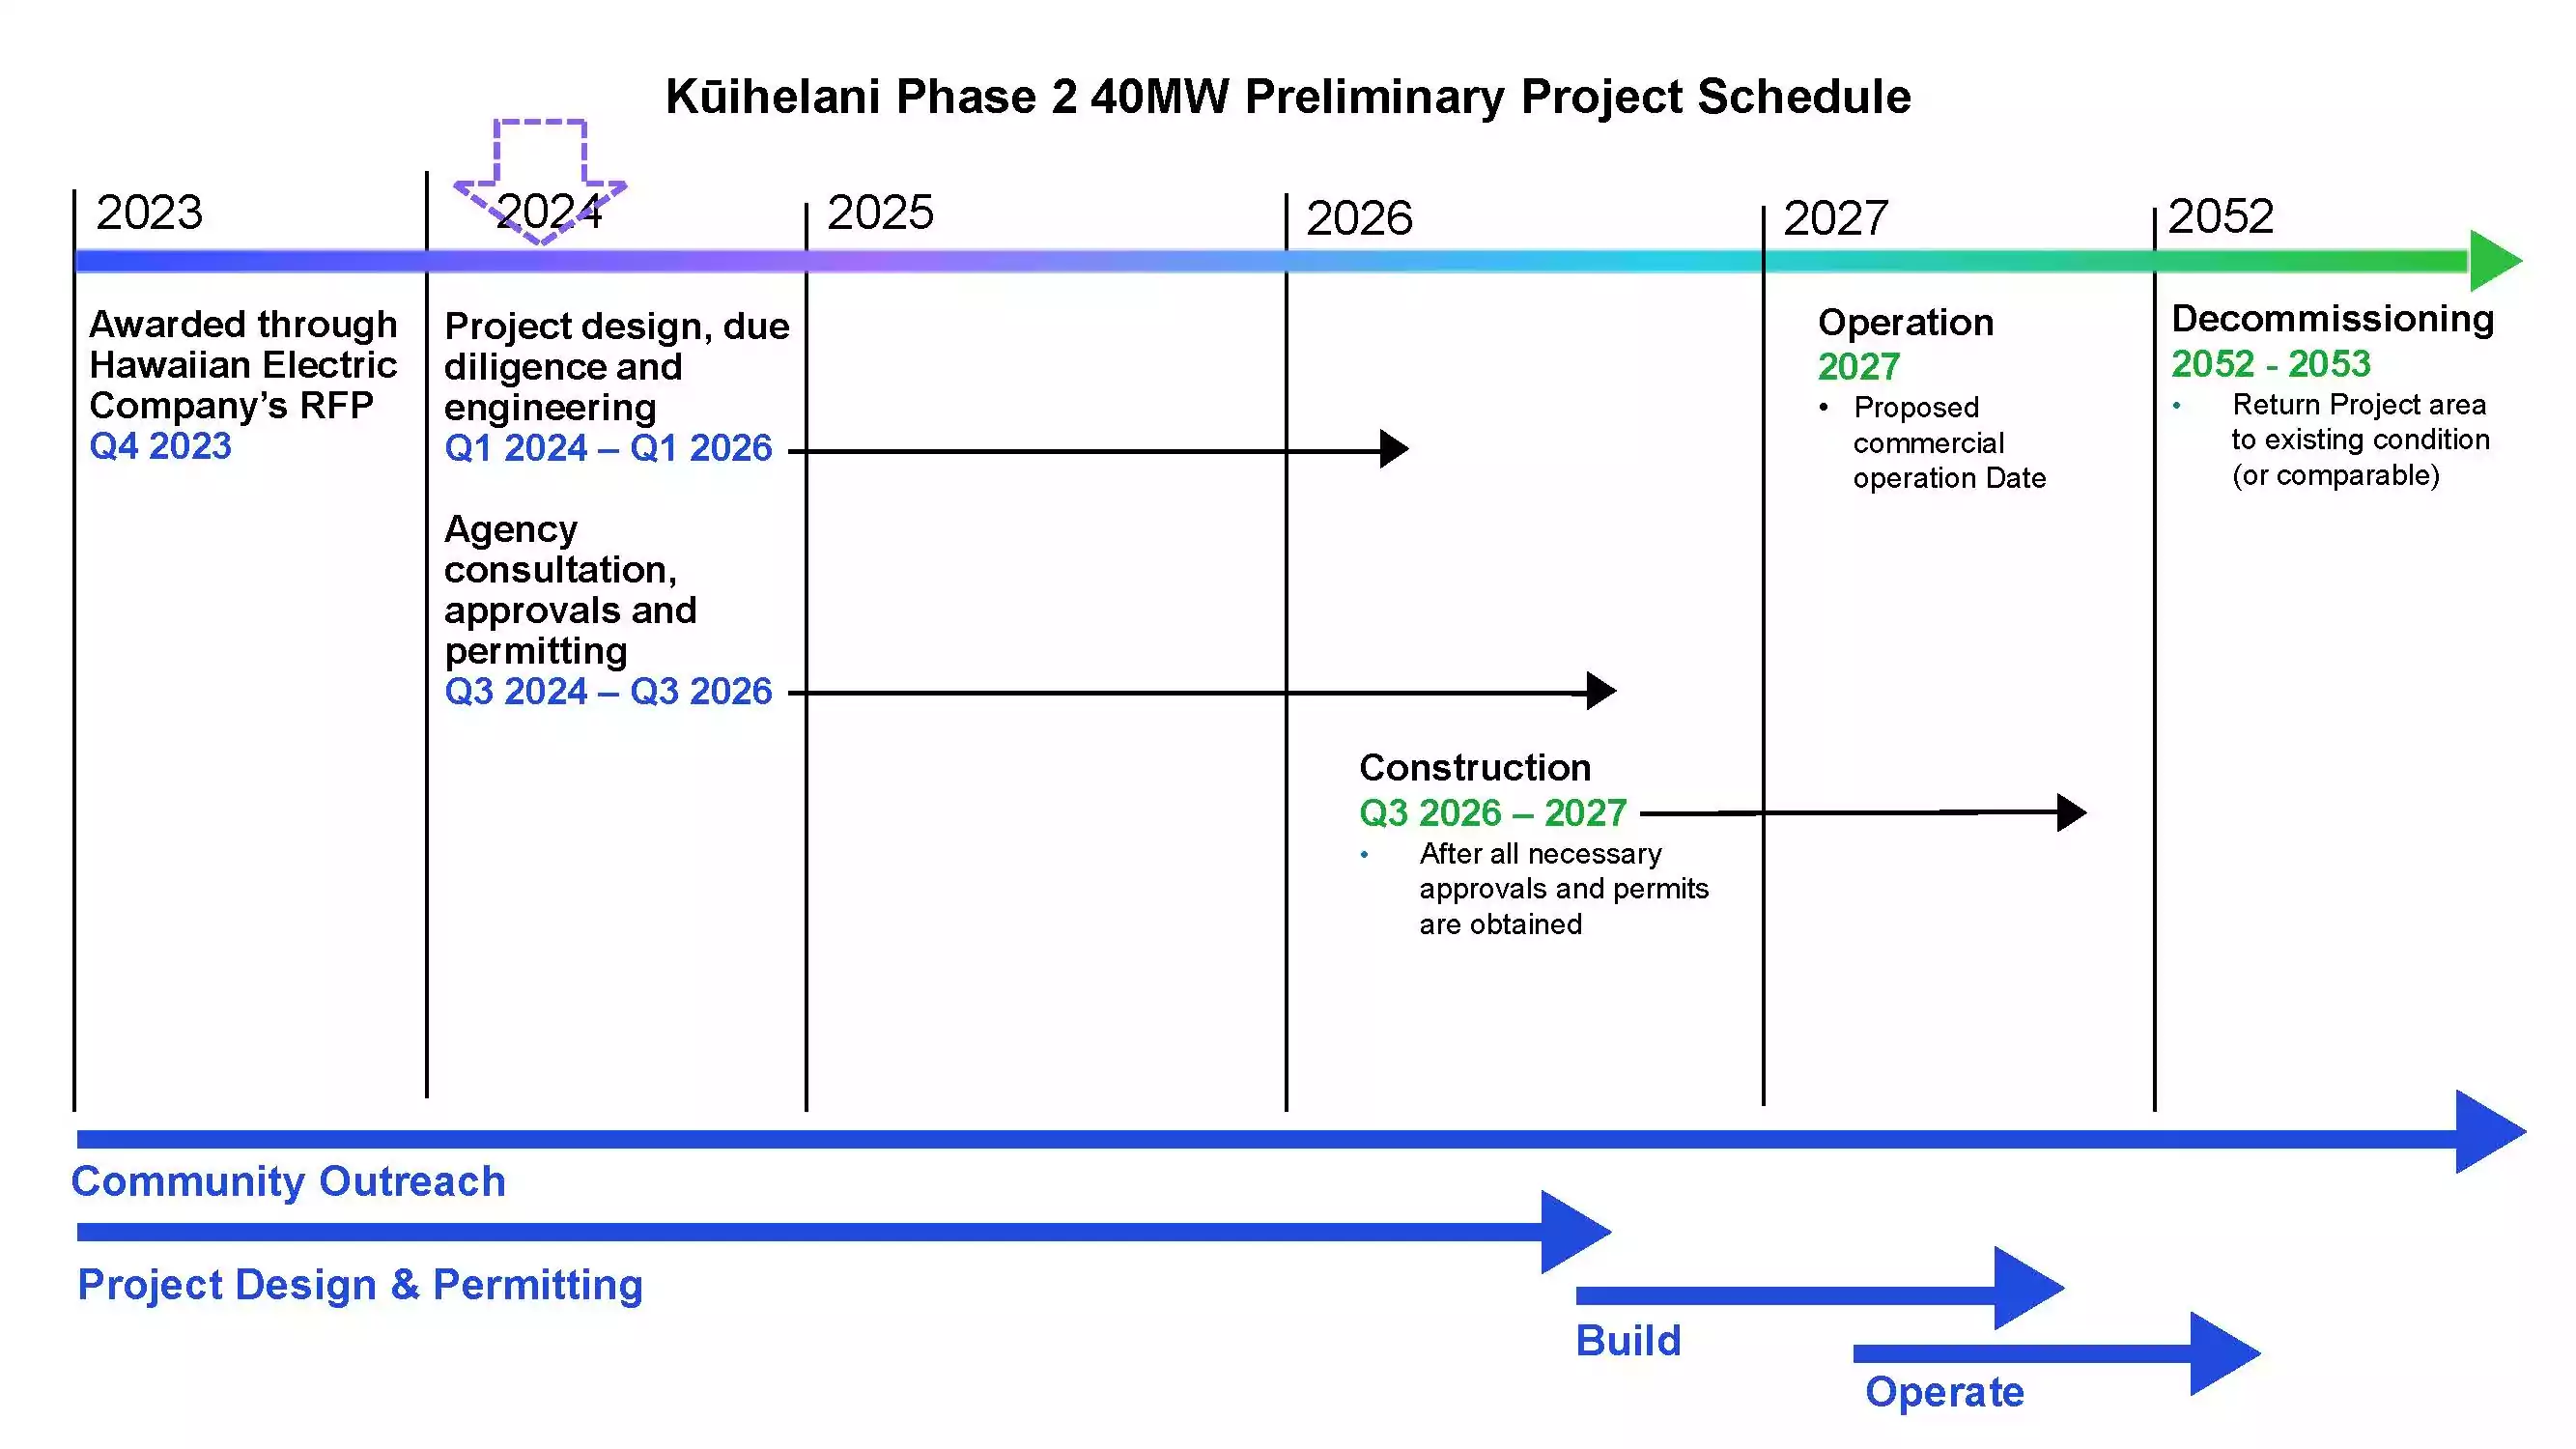 kuihelani_40mw_preliminary_project_schedule_2_27_24.jpeg